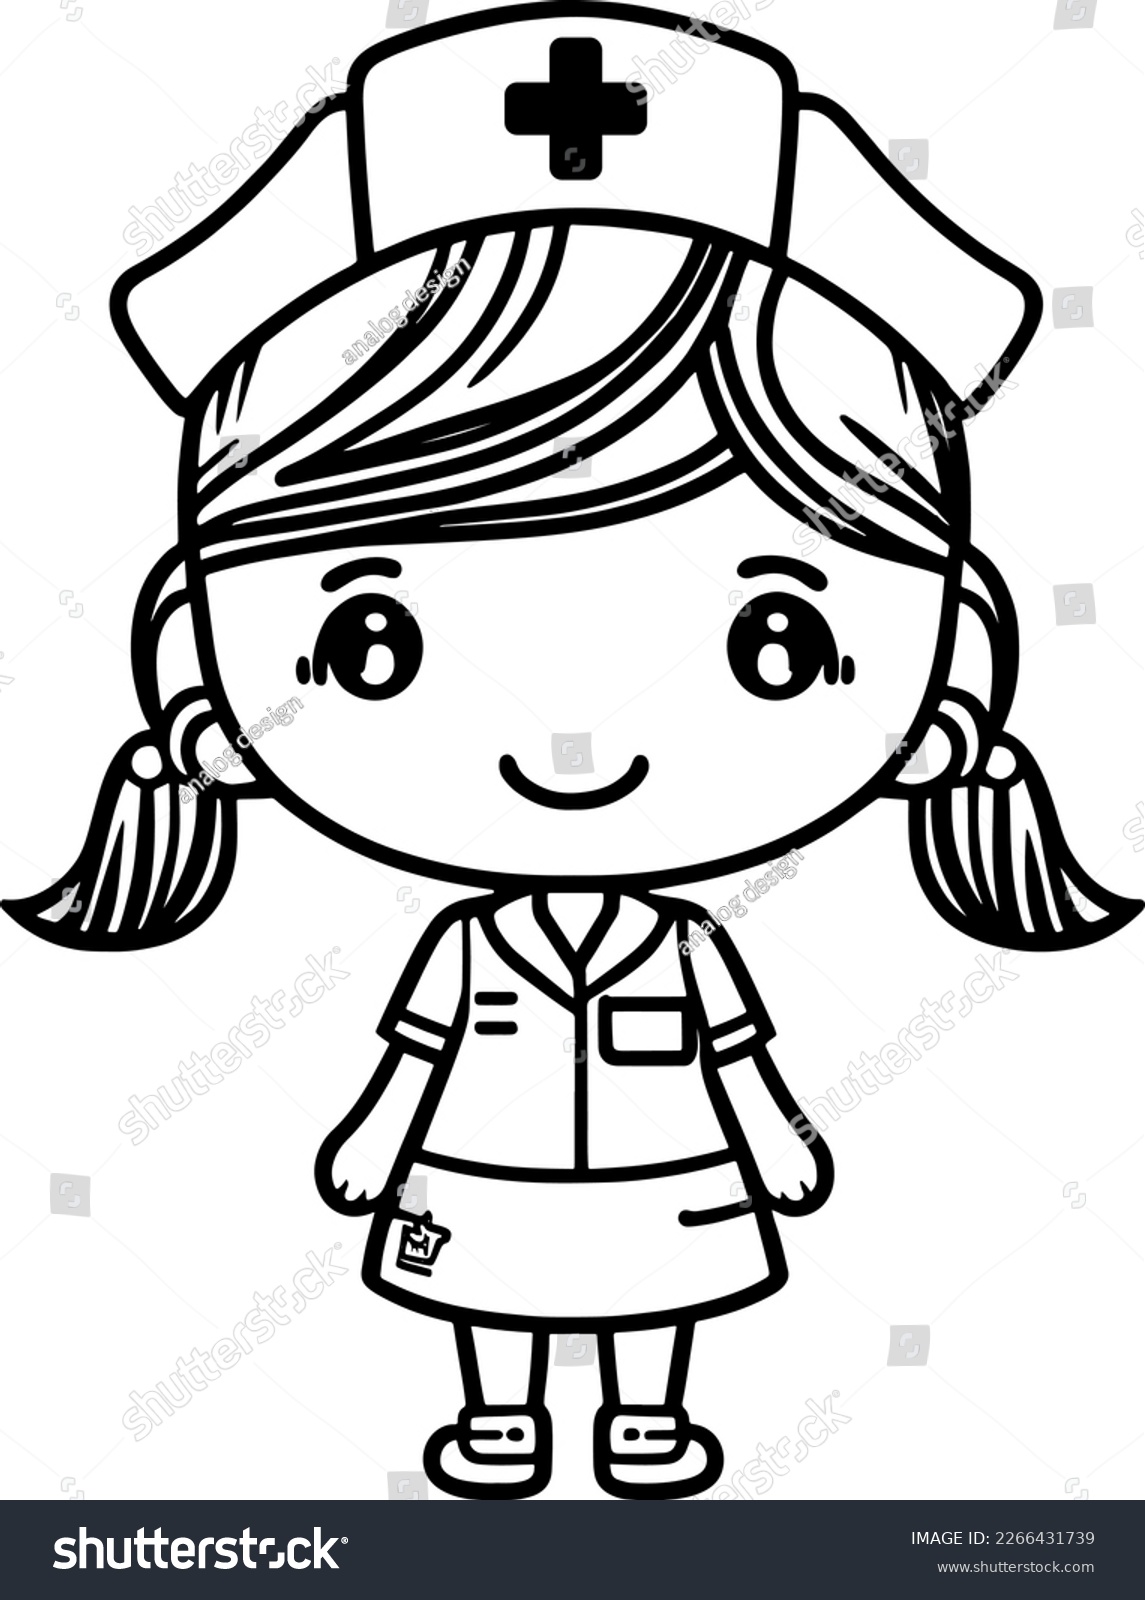 SVG of cute cartoon Nurse svg vector graphic svg